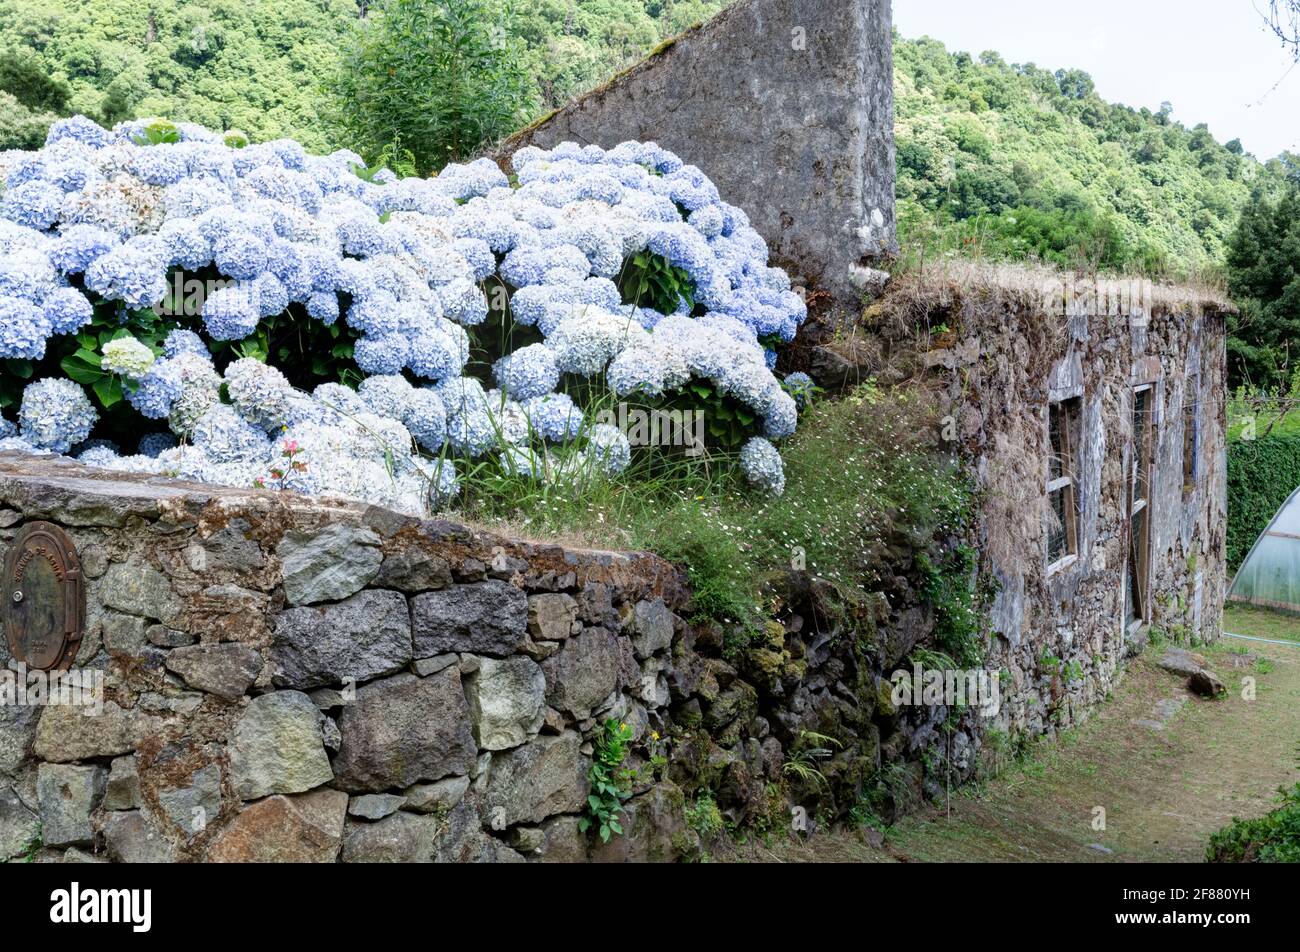 House ruins in Nordeste, Sao Miguel island, Azores Stock Photo